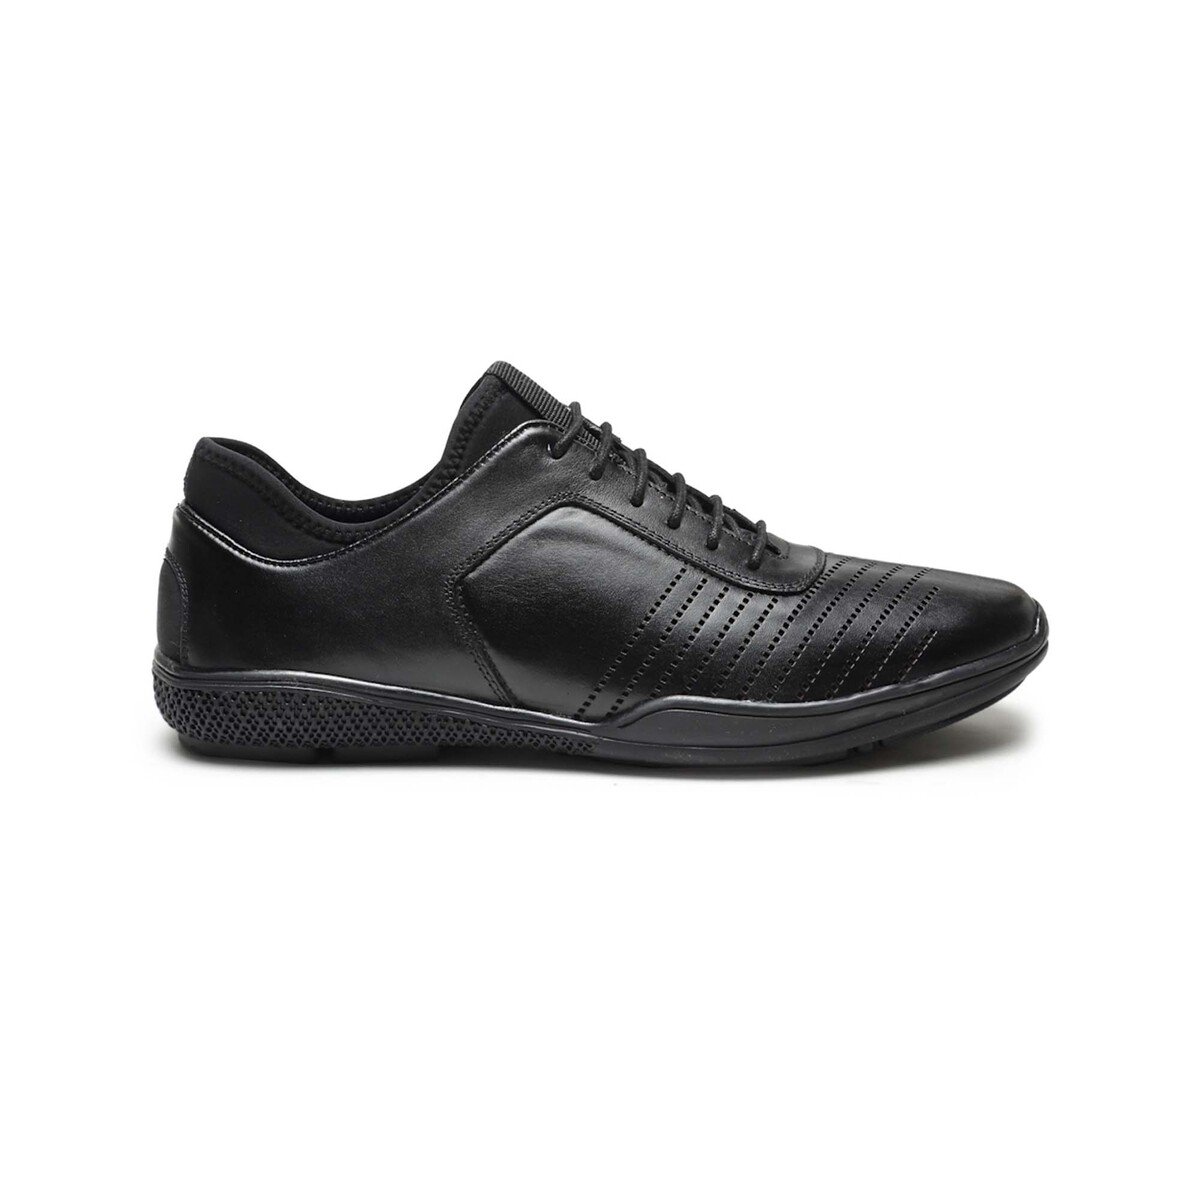 Von Wellx Men's Formal Shoes 76002 Black, 41 Online at Best Price ...